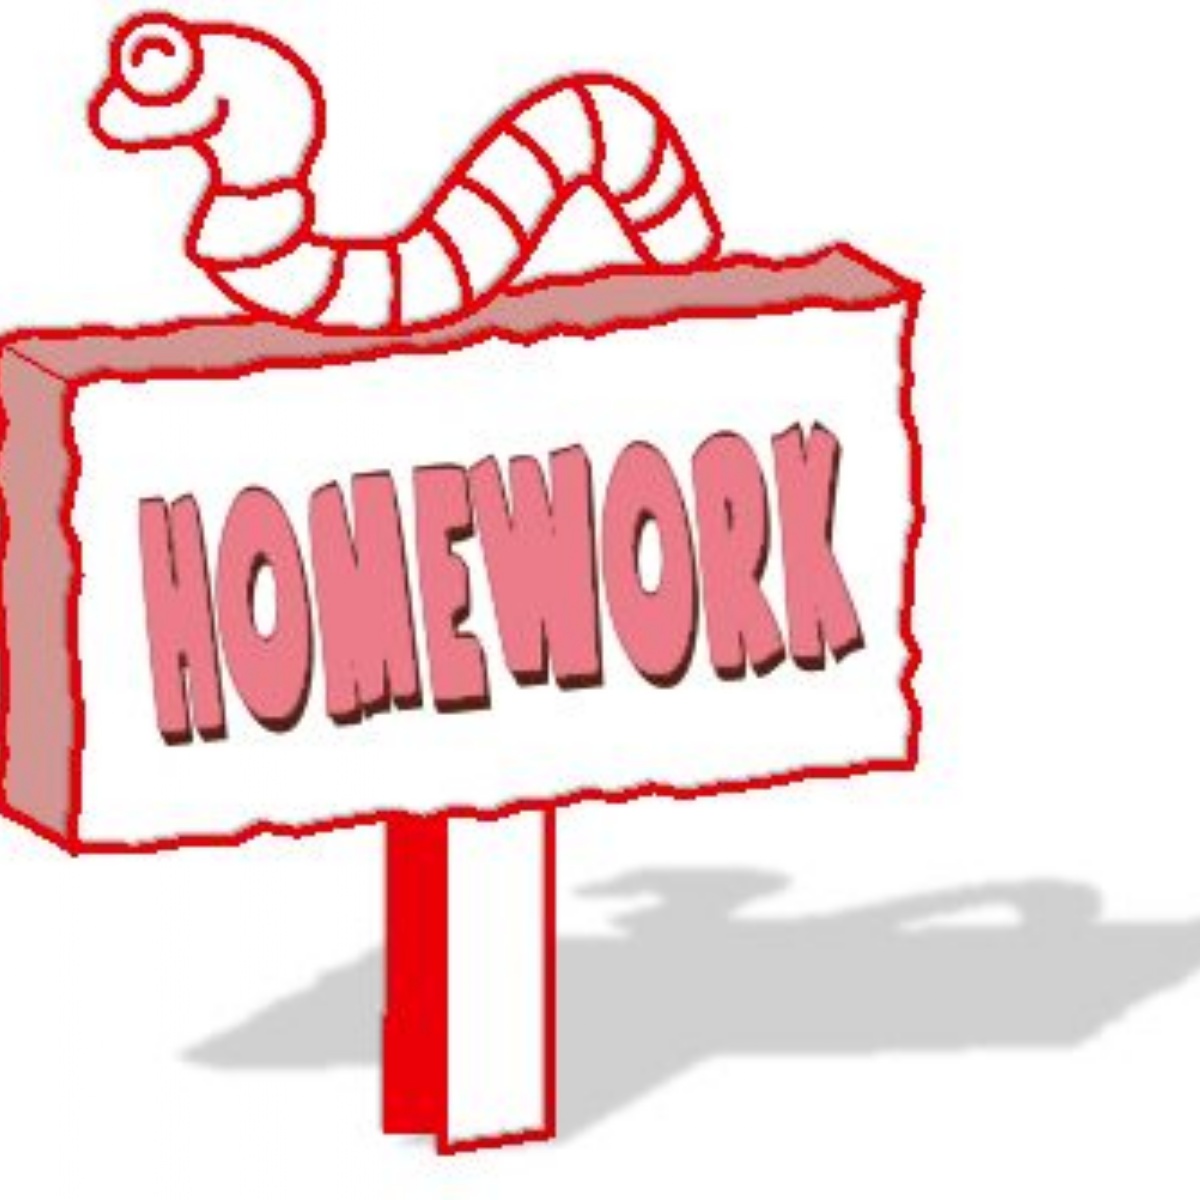 Homework pictures. Hometask картинка. Homework. Homework надпись. Homework картинка на белом фоне.